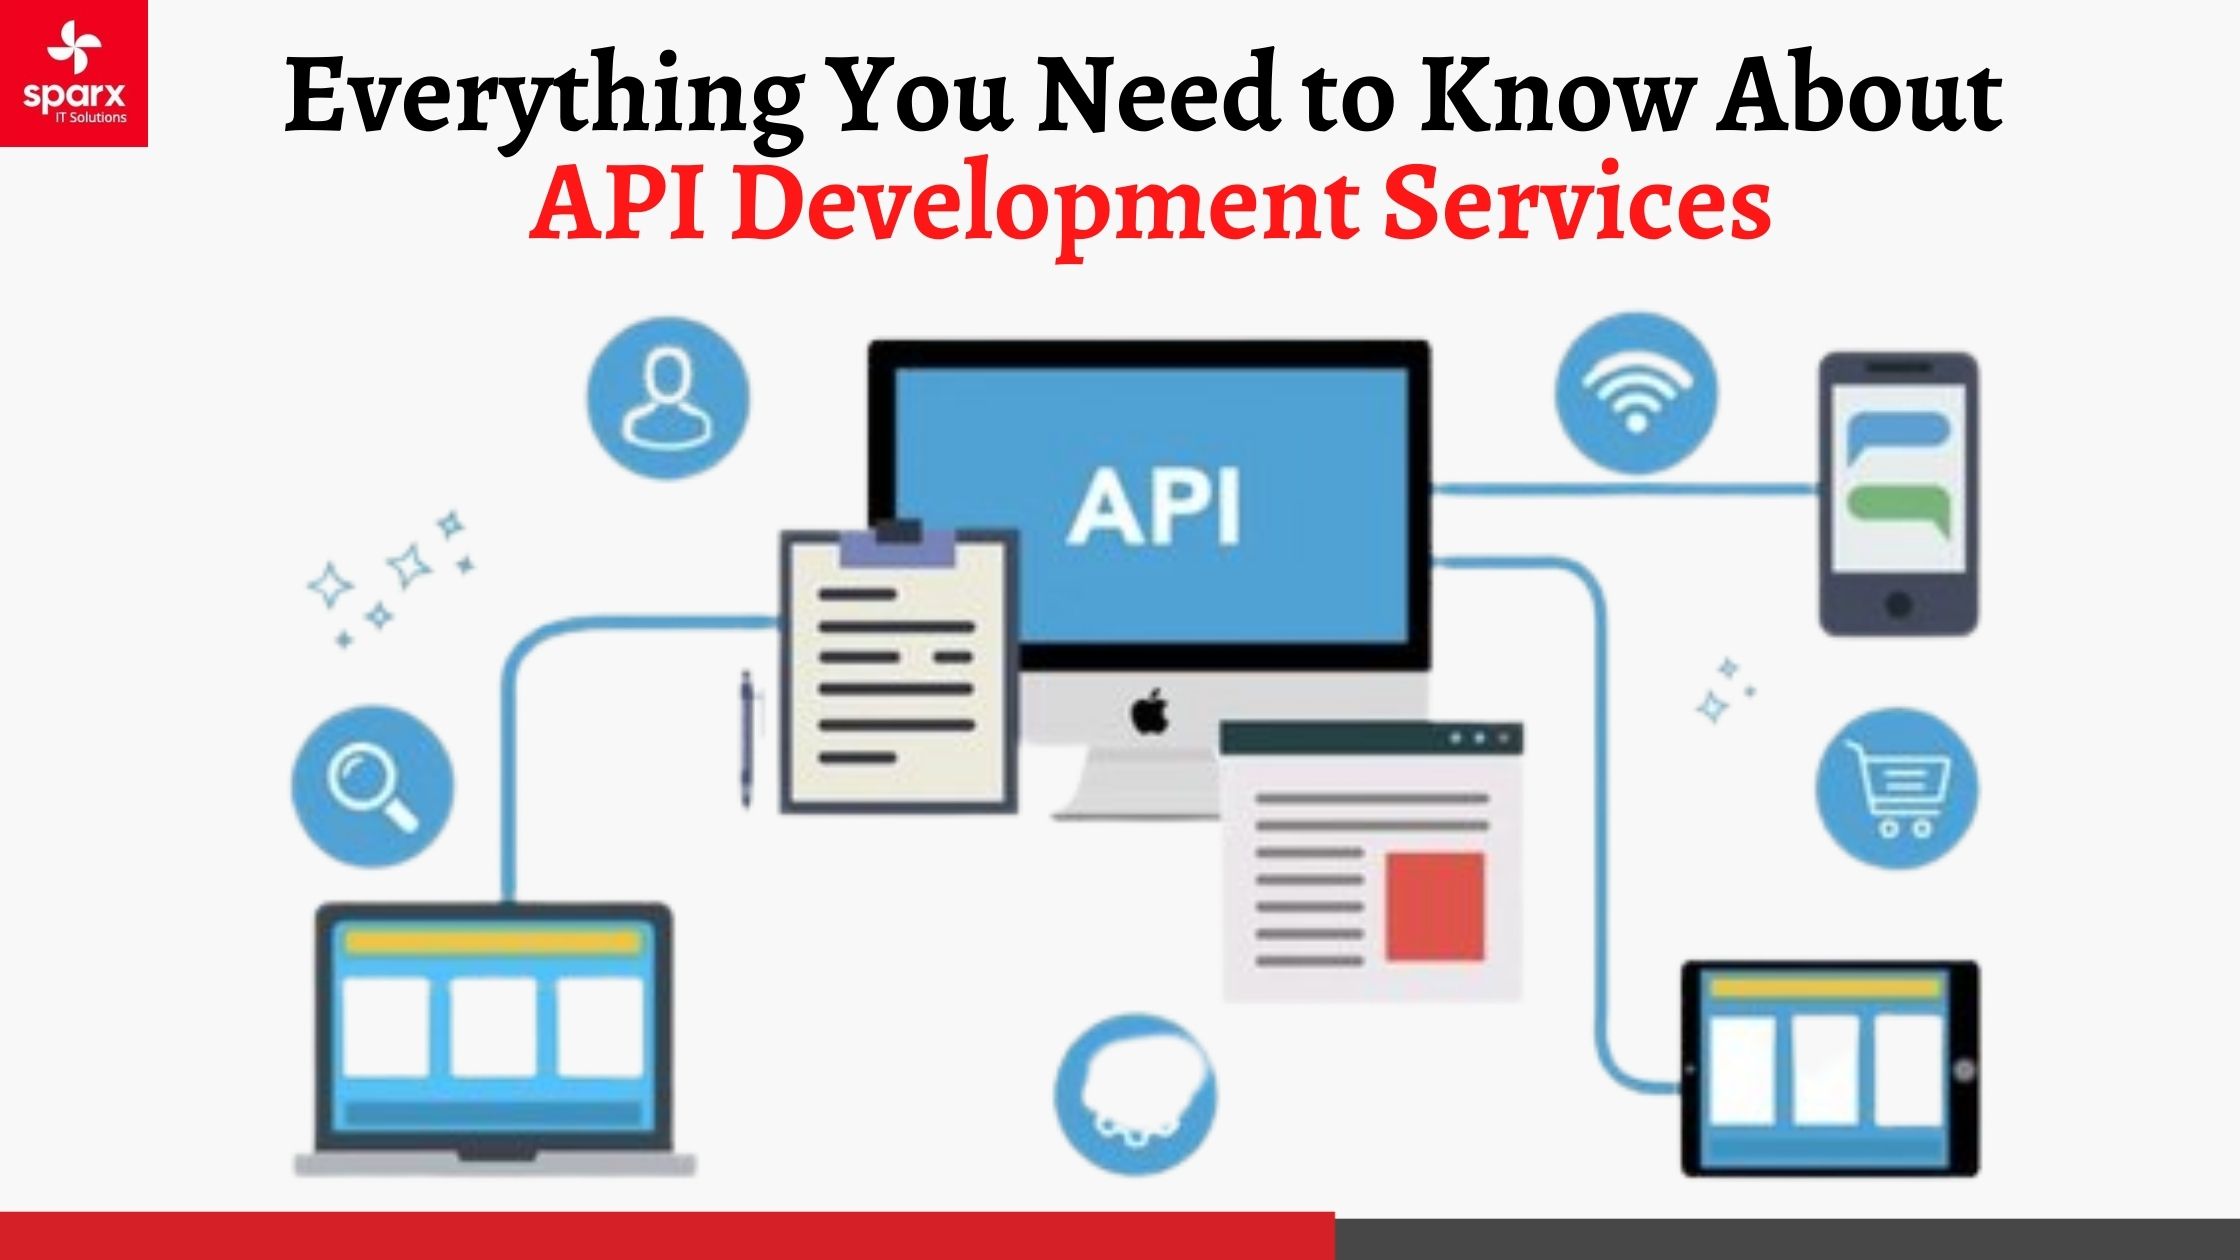 Your Go-To Guide to API Development